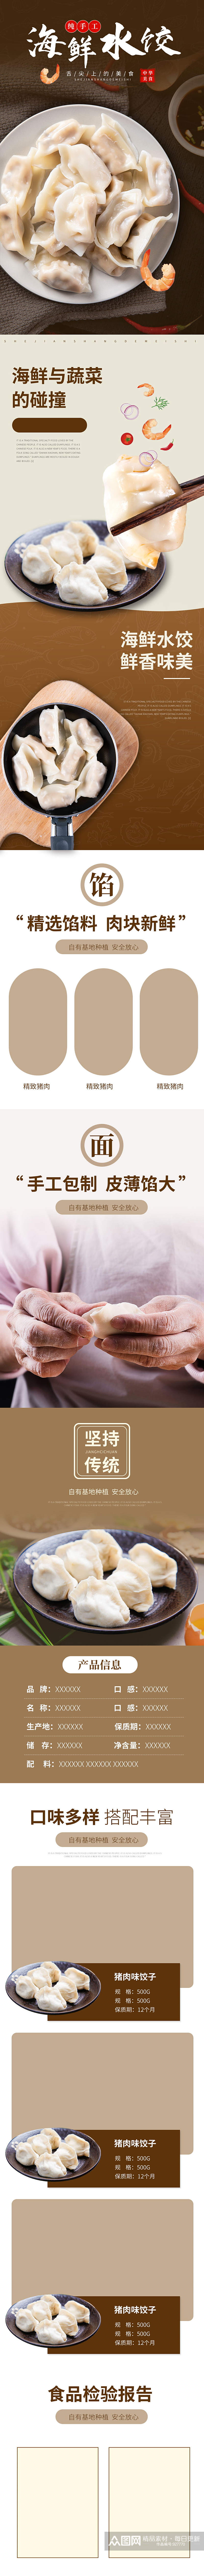 海鲜水饺手工包子蒸饺美食详情页素材